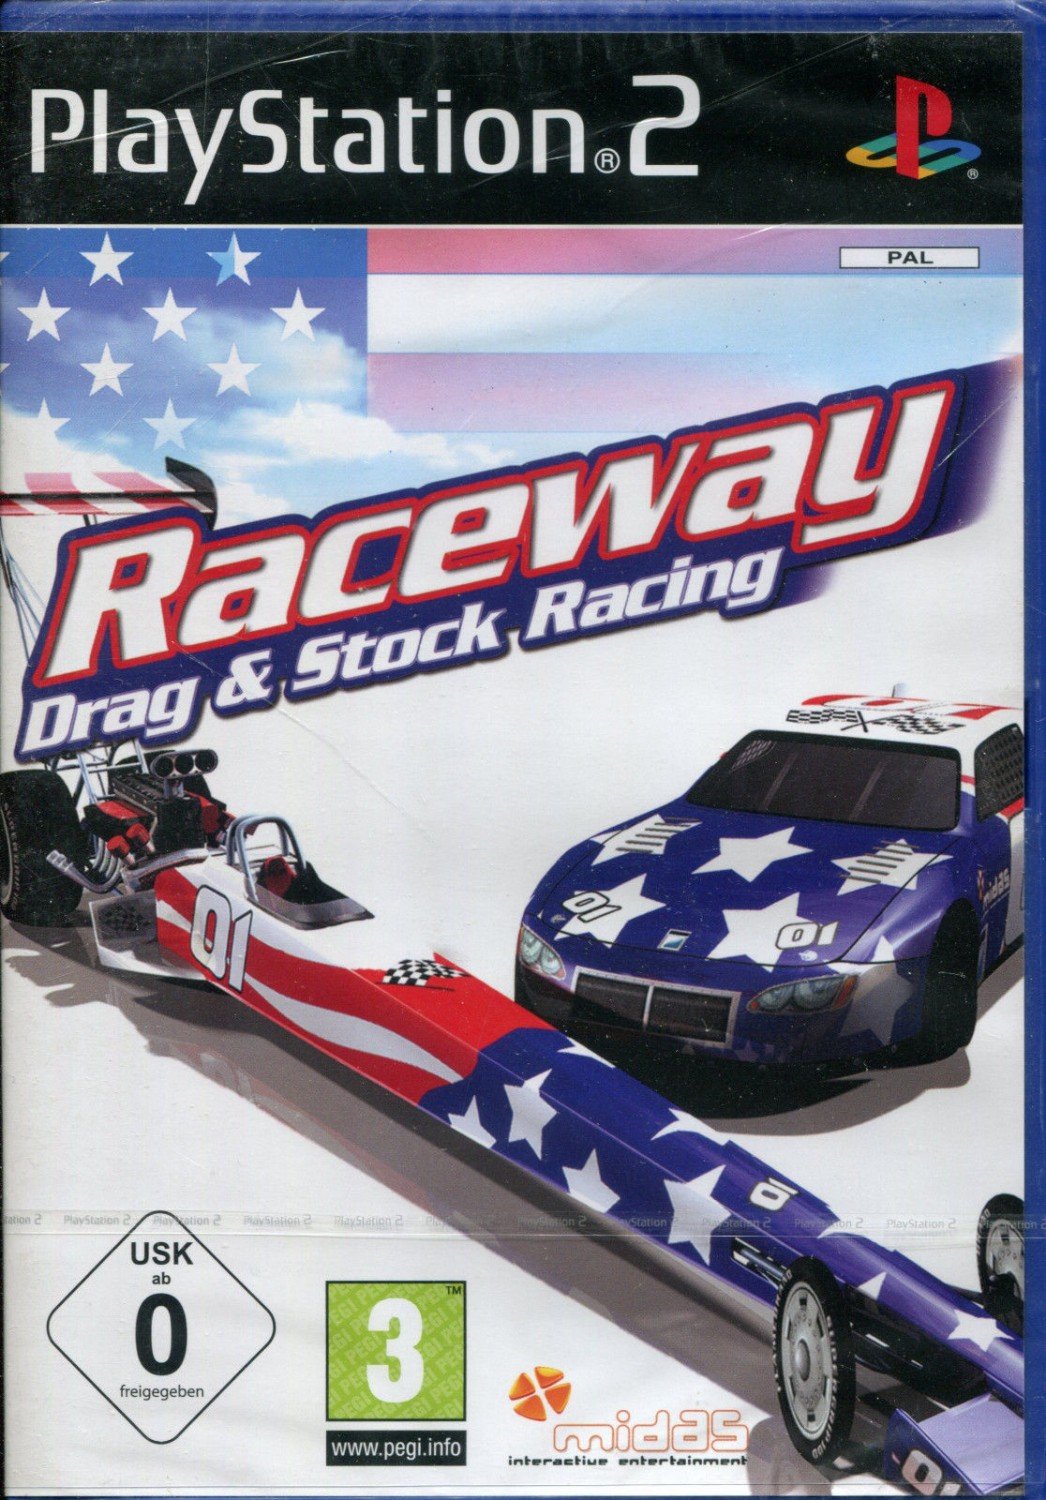 Raceway Drag&Stock Racing - PlayStation 2 Játékok